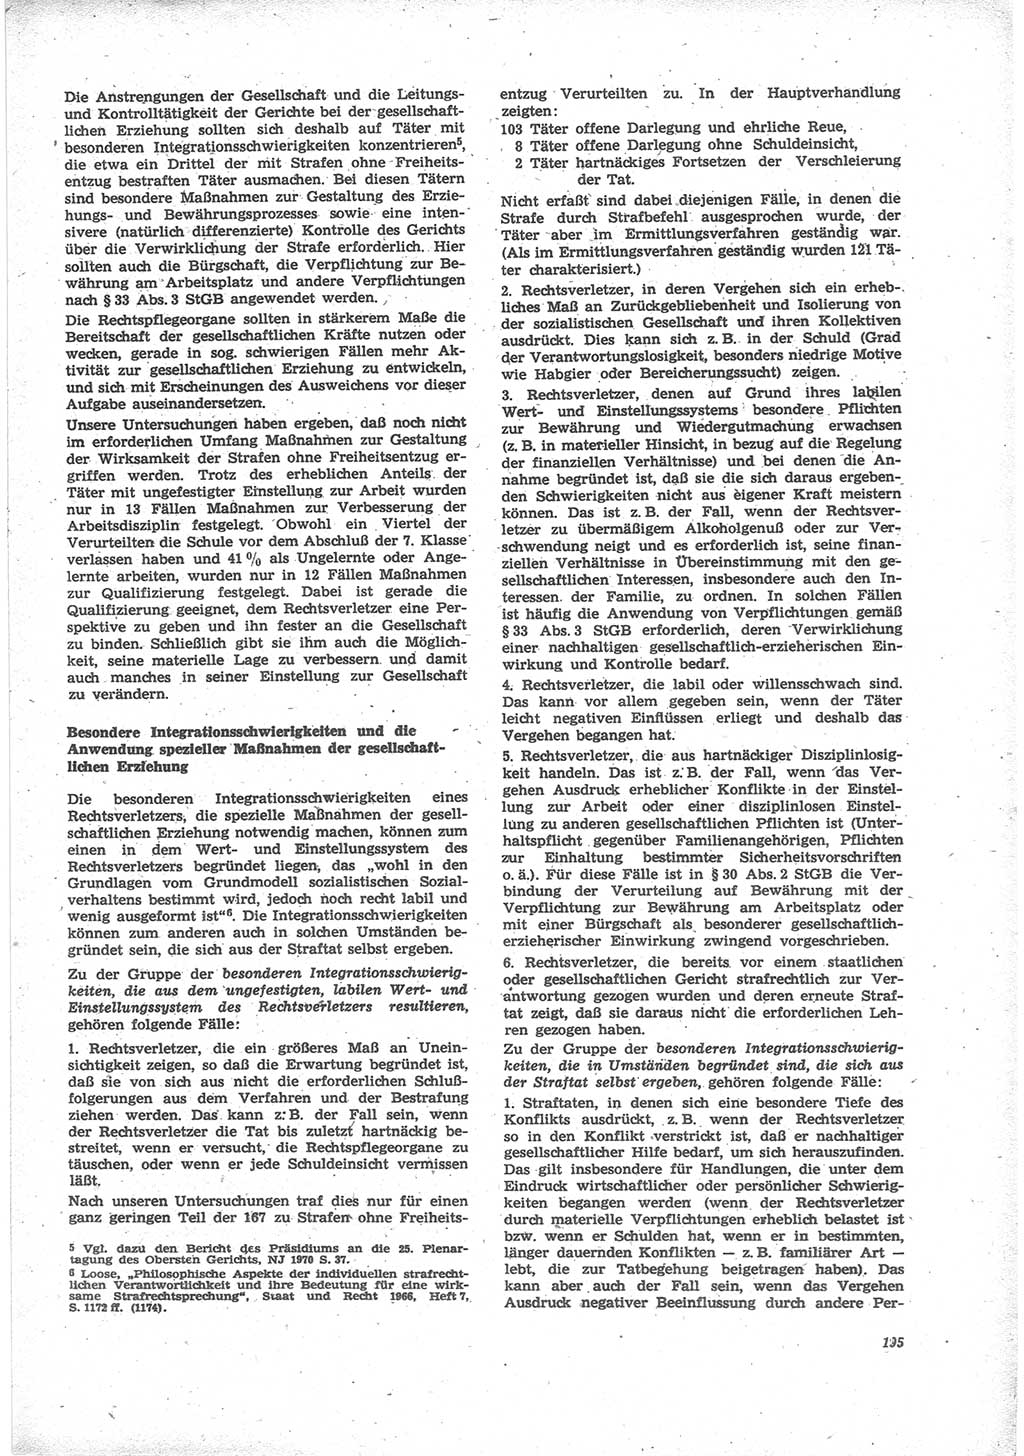 Neue Justiz (NJ), Zeitschrift für Recht und Rechtswissenschaft [Deutsche Demokratische Republik (DDR)], 24. Jahrgang 1970, Seite 195 (NJ DDR 1970, S. 195)